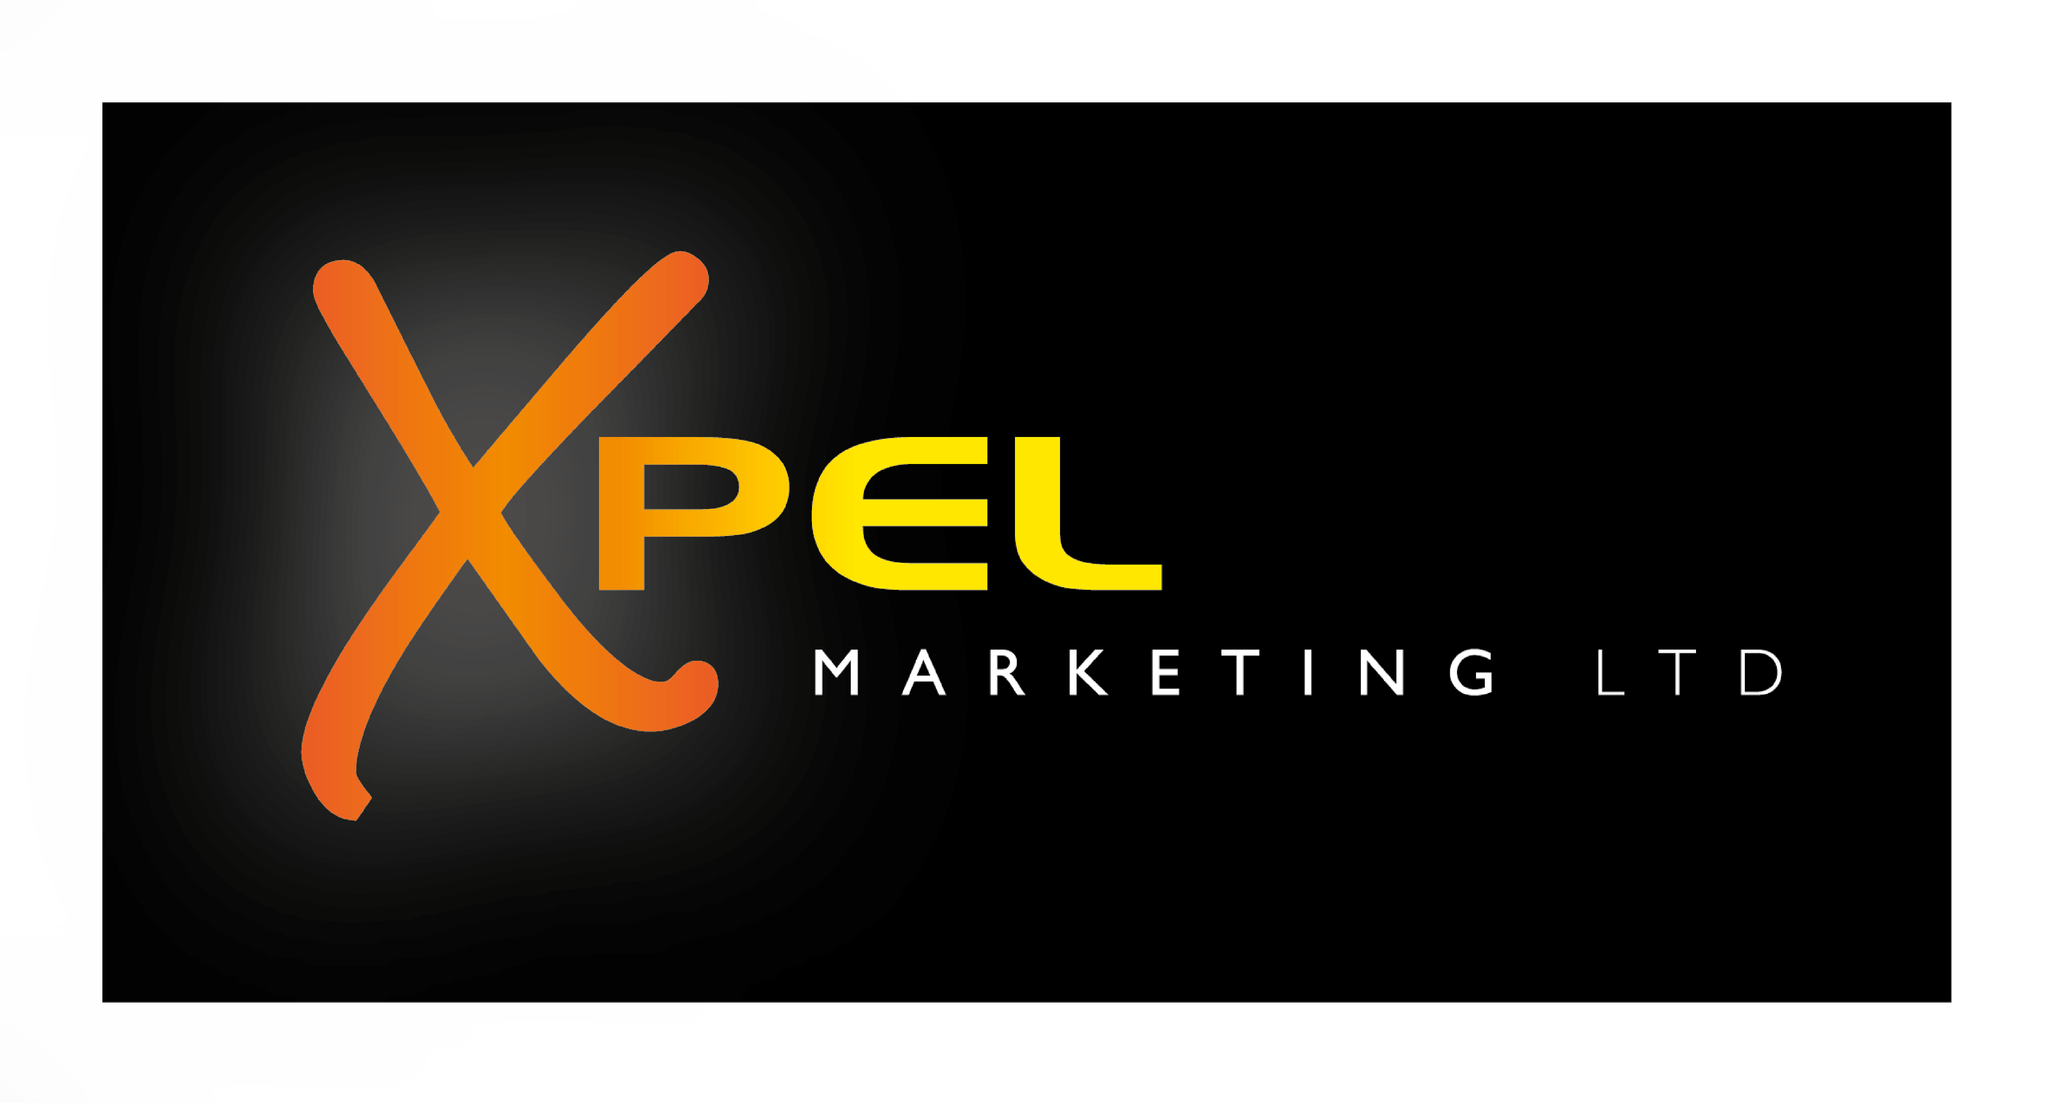 Xpel Marketing Ltd.